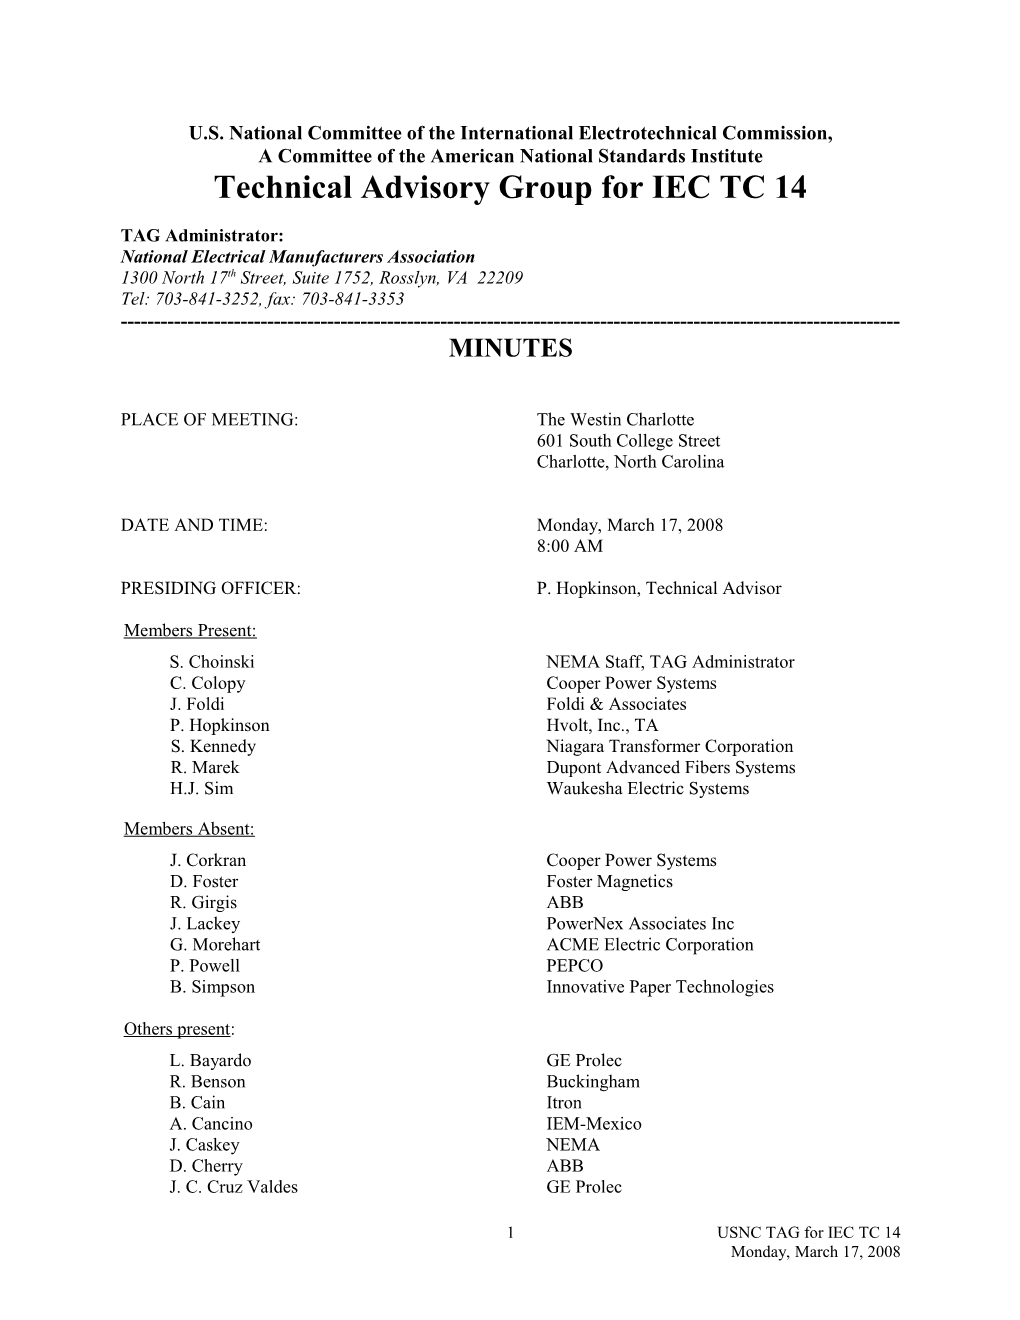 S08-IEC-TC14 Meeting Minutes